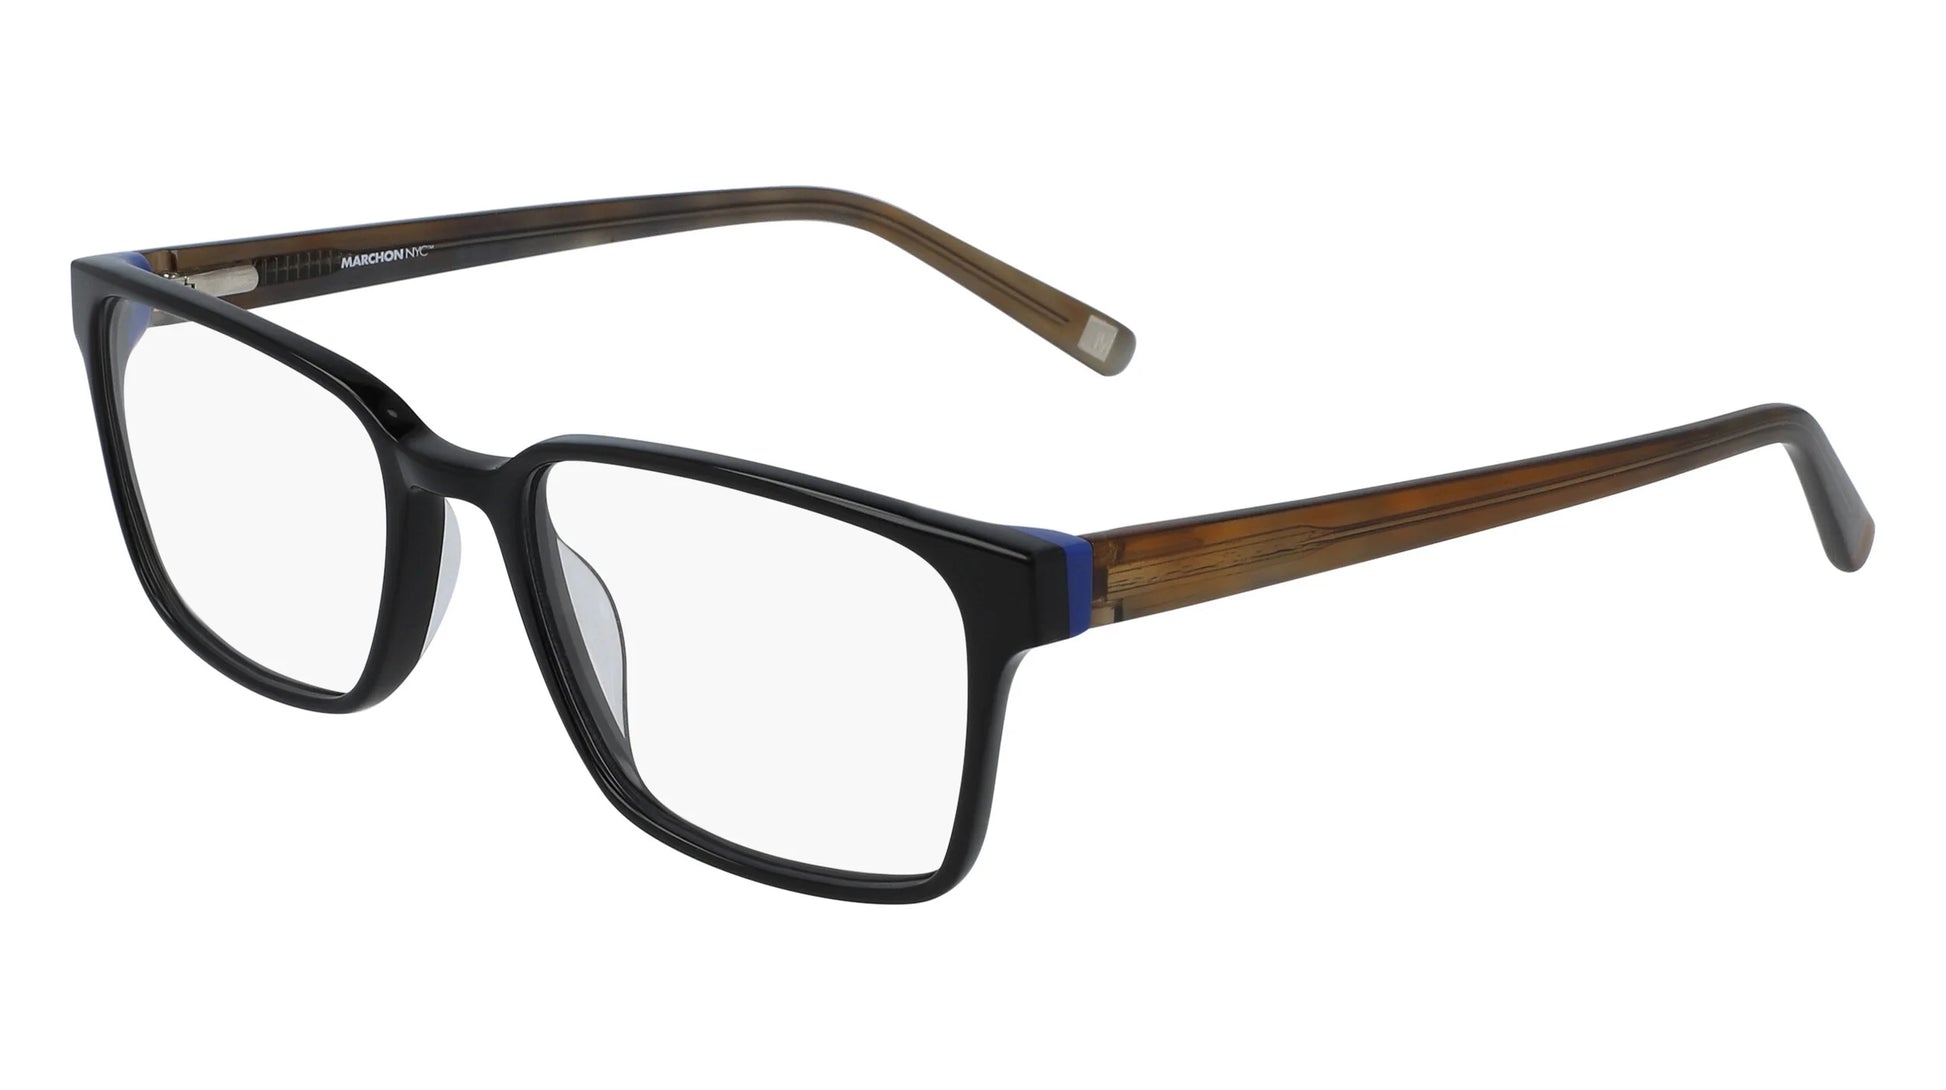 Marchon NYC M-3007 Eyeglasses Black